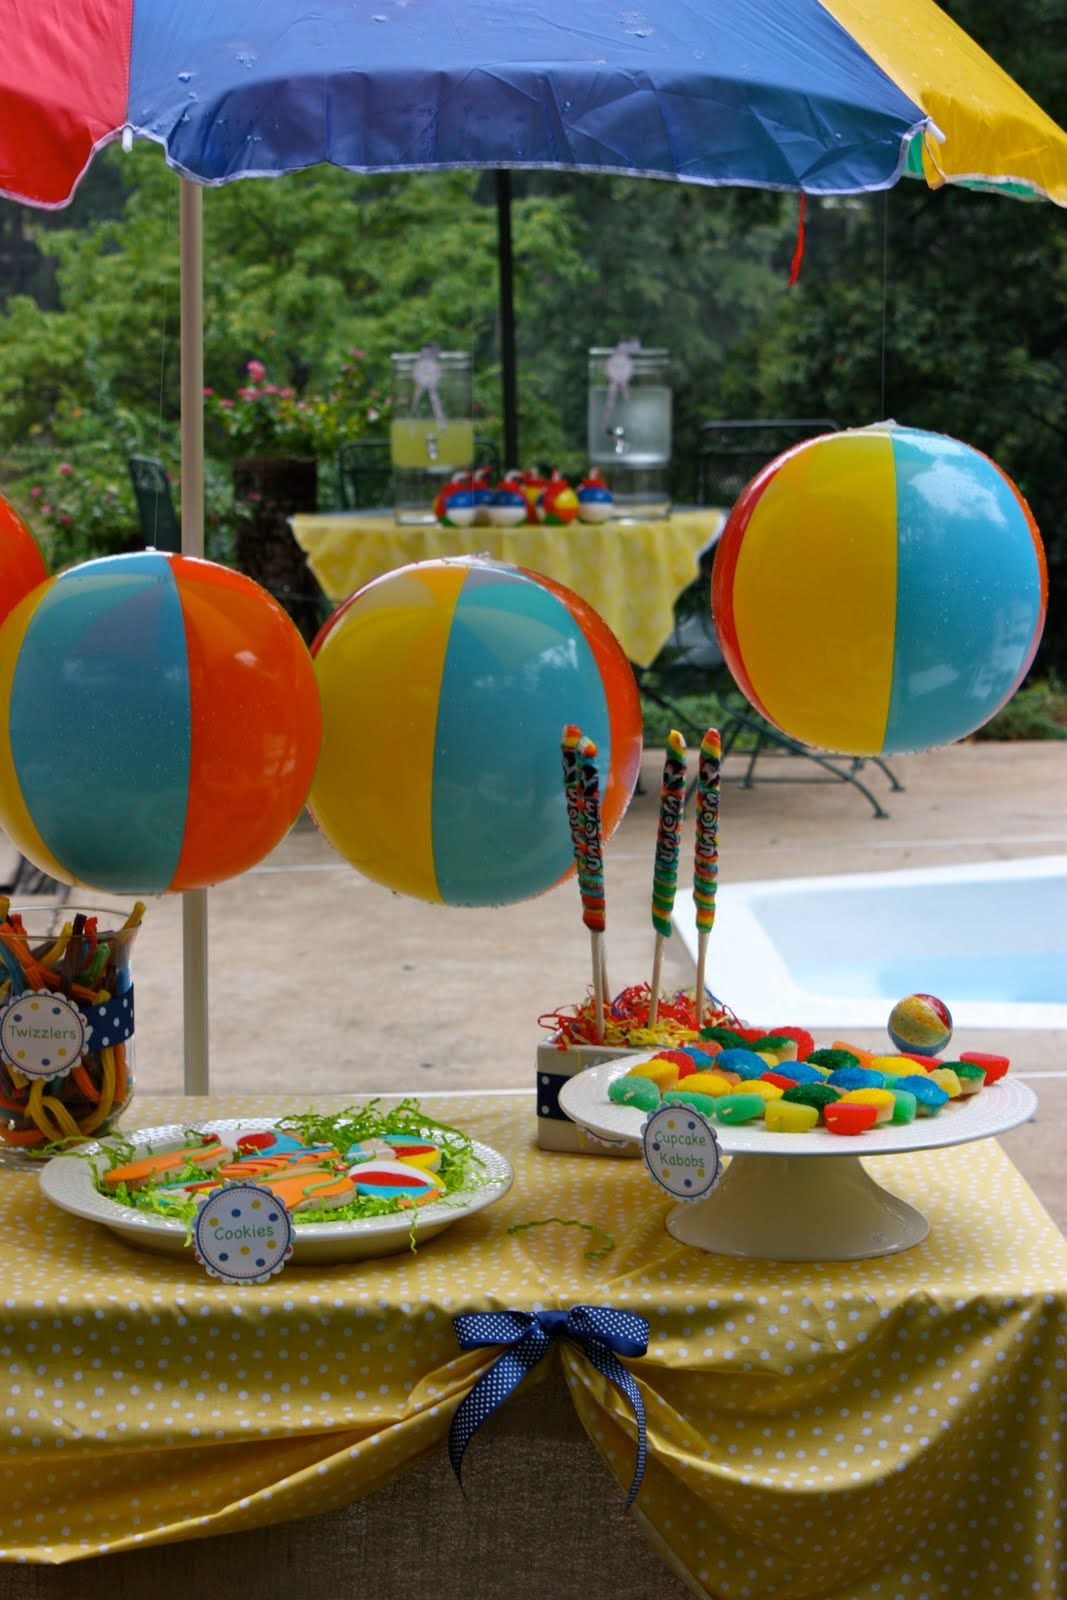 College Pool Party Ideas
 Splish Splash Pool Party Theme Twizlers Beach balls